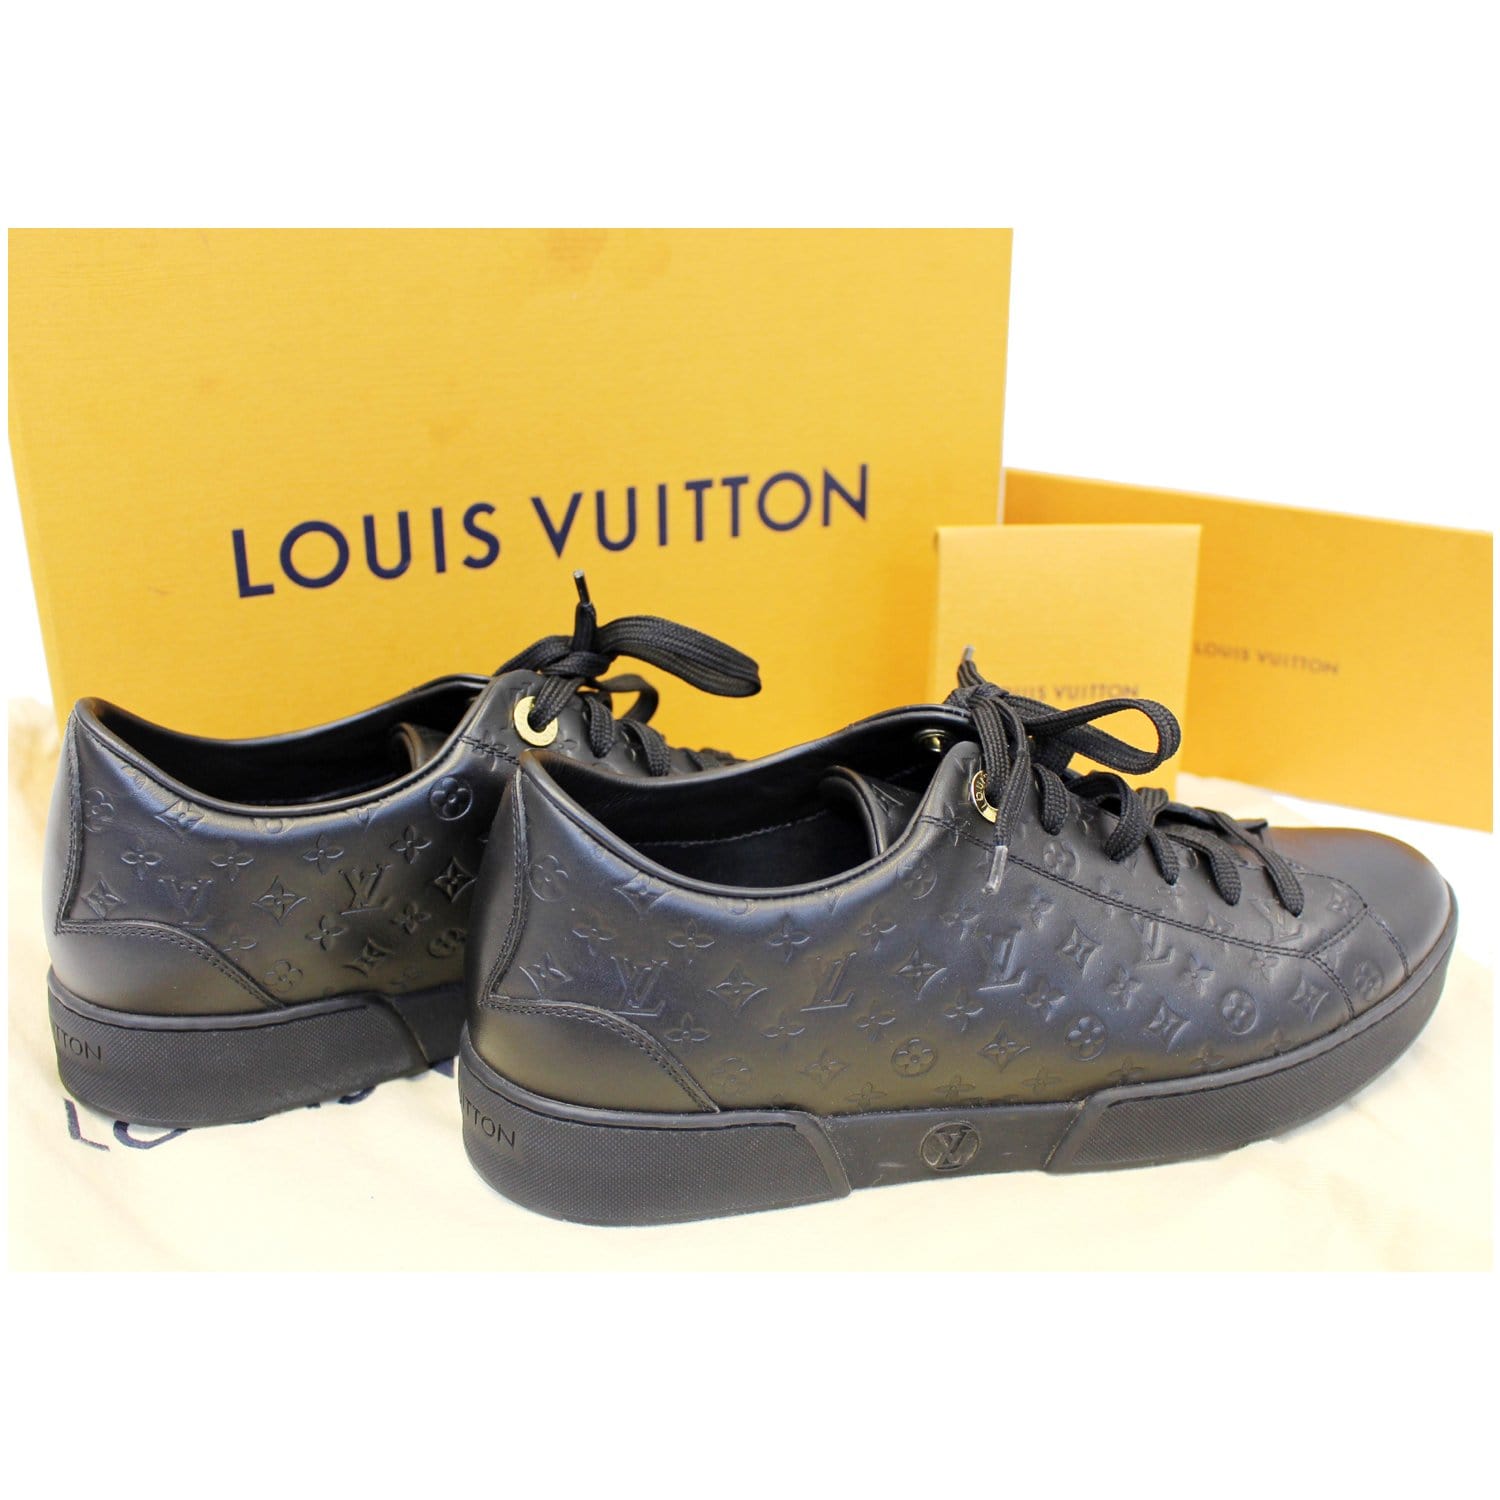 Tiểu Vy mặc quần Louis Vuitton gần 40 triệu đồng